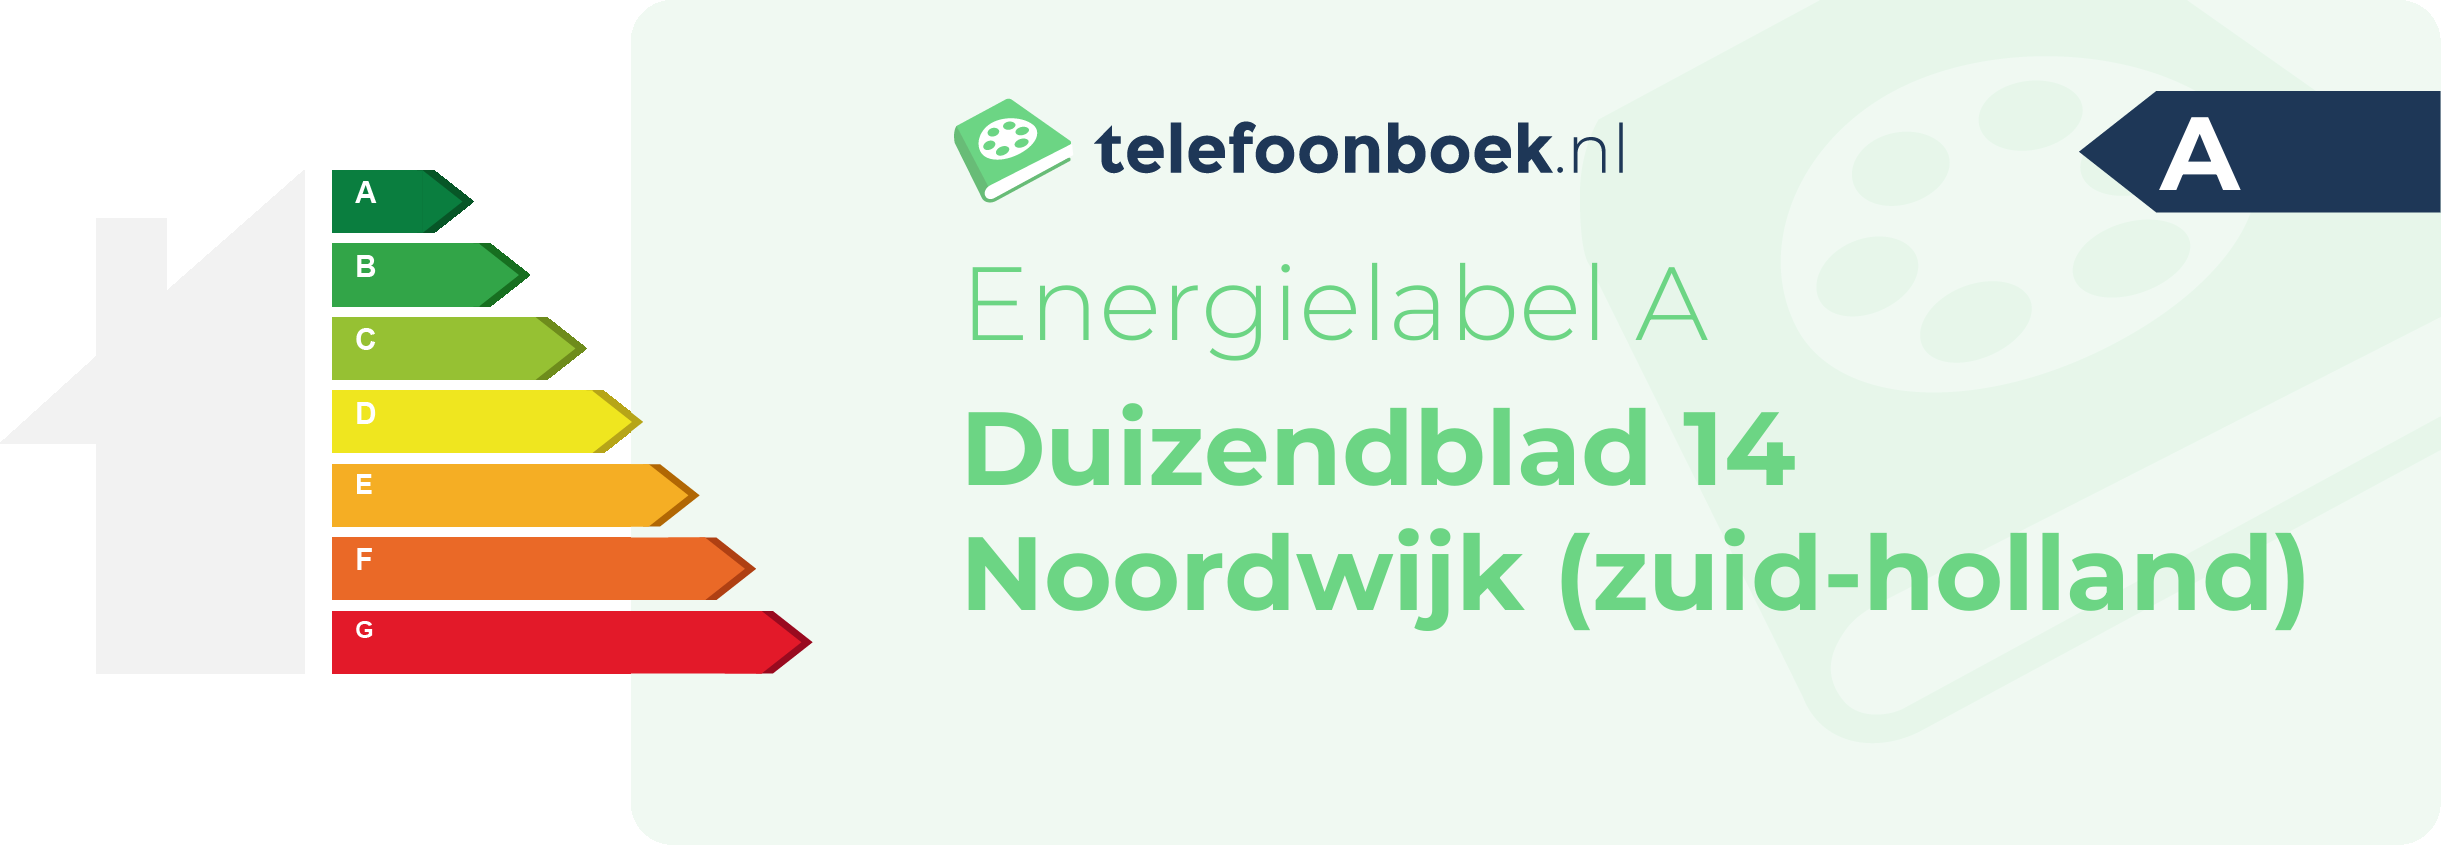 Energielabel Duizendblad 14 Noordwijk (Zuid-Holland)